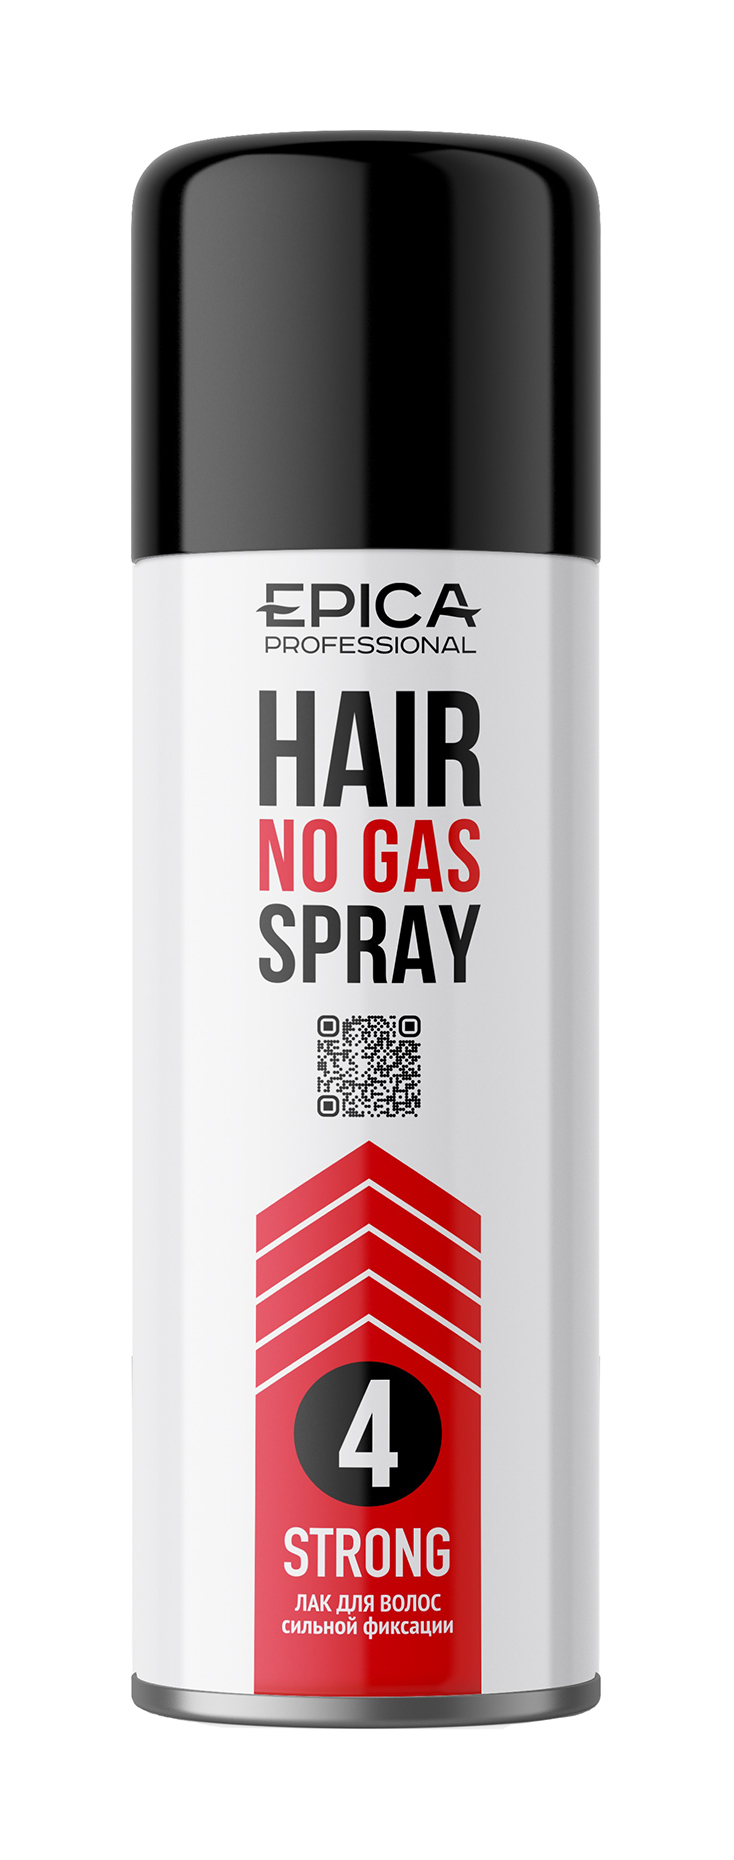 Лак для волос Epica сильной фиксации Professional Hair No Gas Spray Strong 200мл экспресс маска для увеличения объема волос 8 seconds liquid hair mask маска маска 200мл